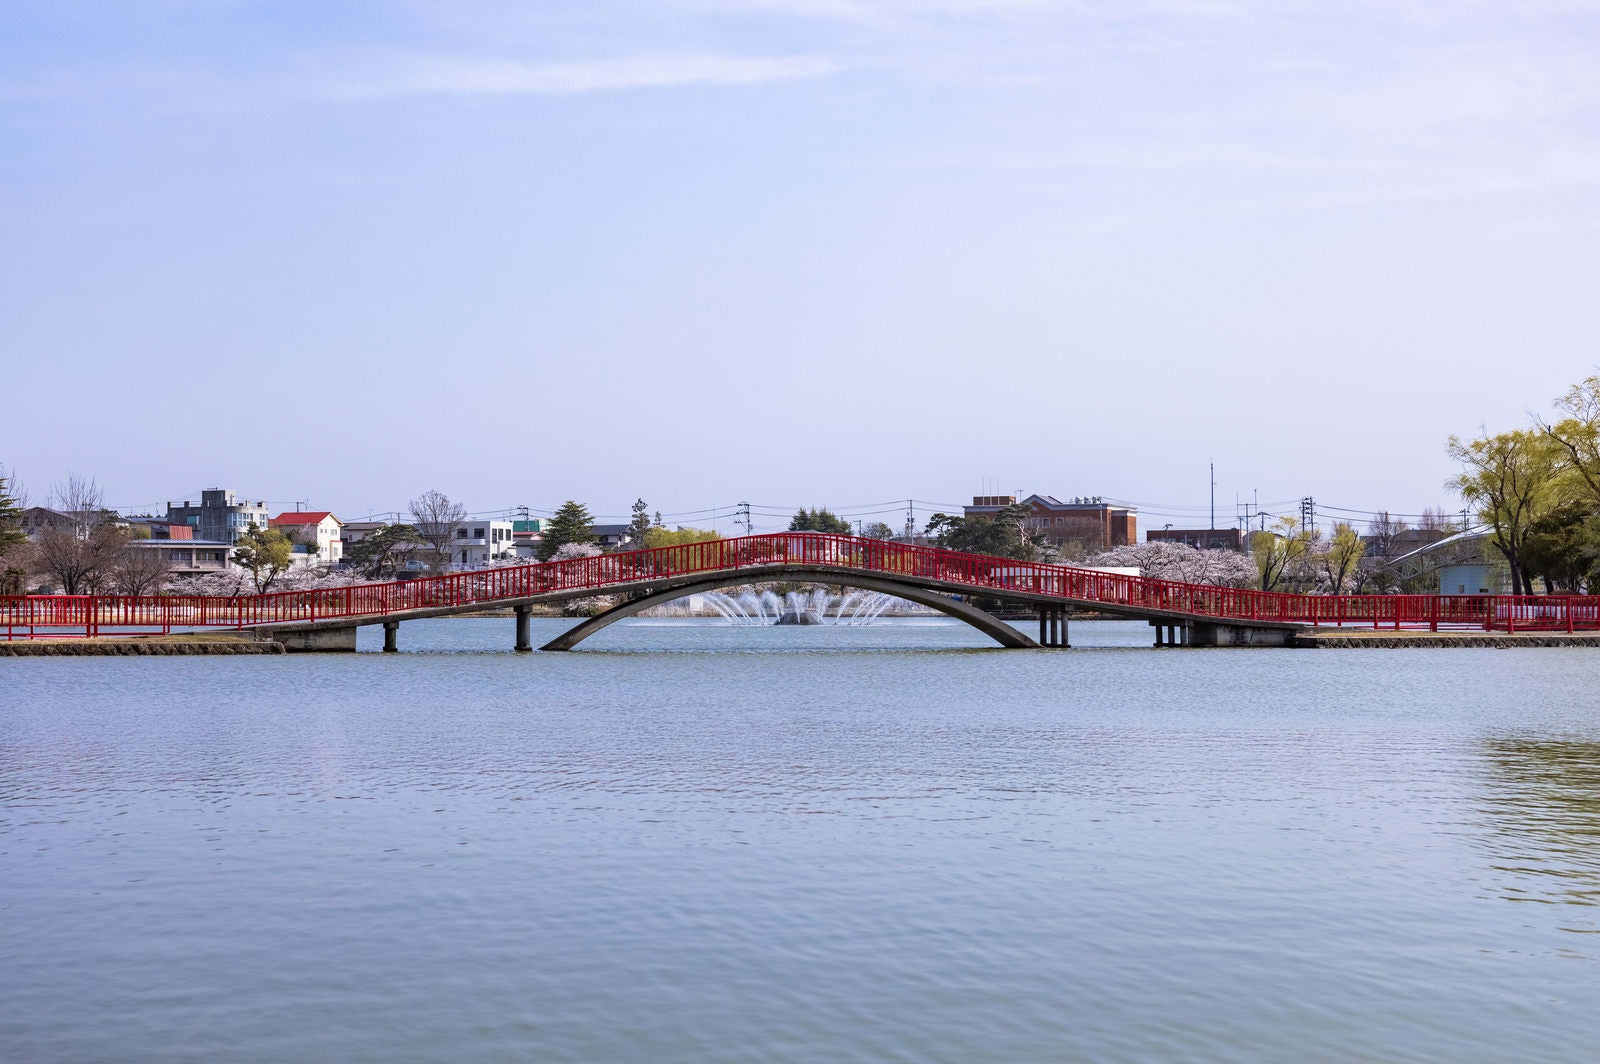 「開成山公園の五十鈴湖に架かる赤い橋の向こうに見える桜の様子」の写真